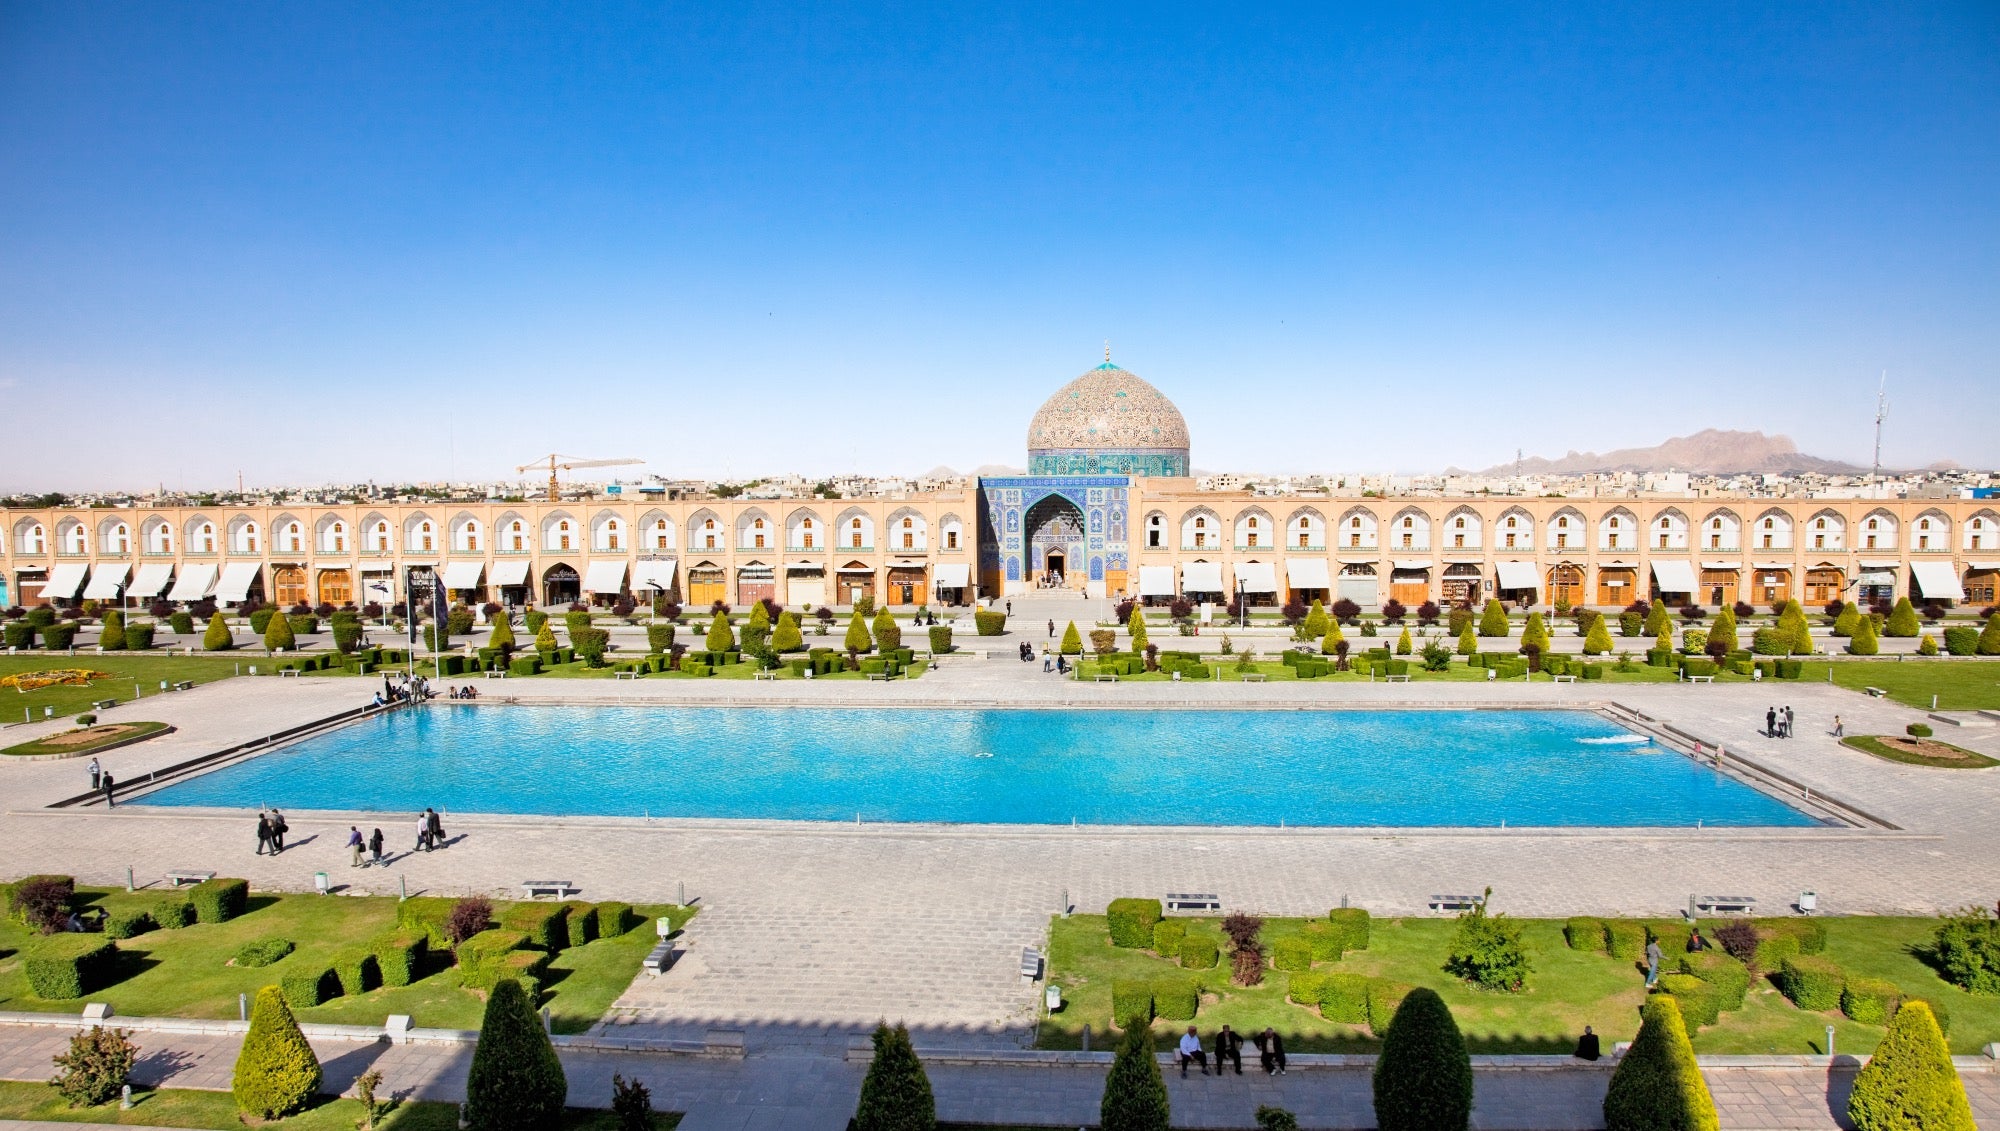 Das Stadtbild von Isfahan aus der Vogelperspektive. Im Vordergrund ist ein himmelblauer Teich.